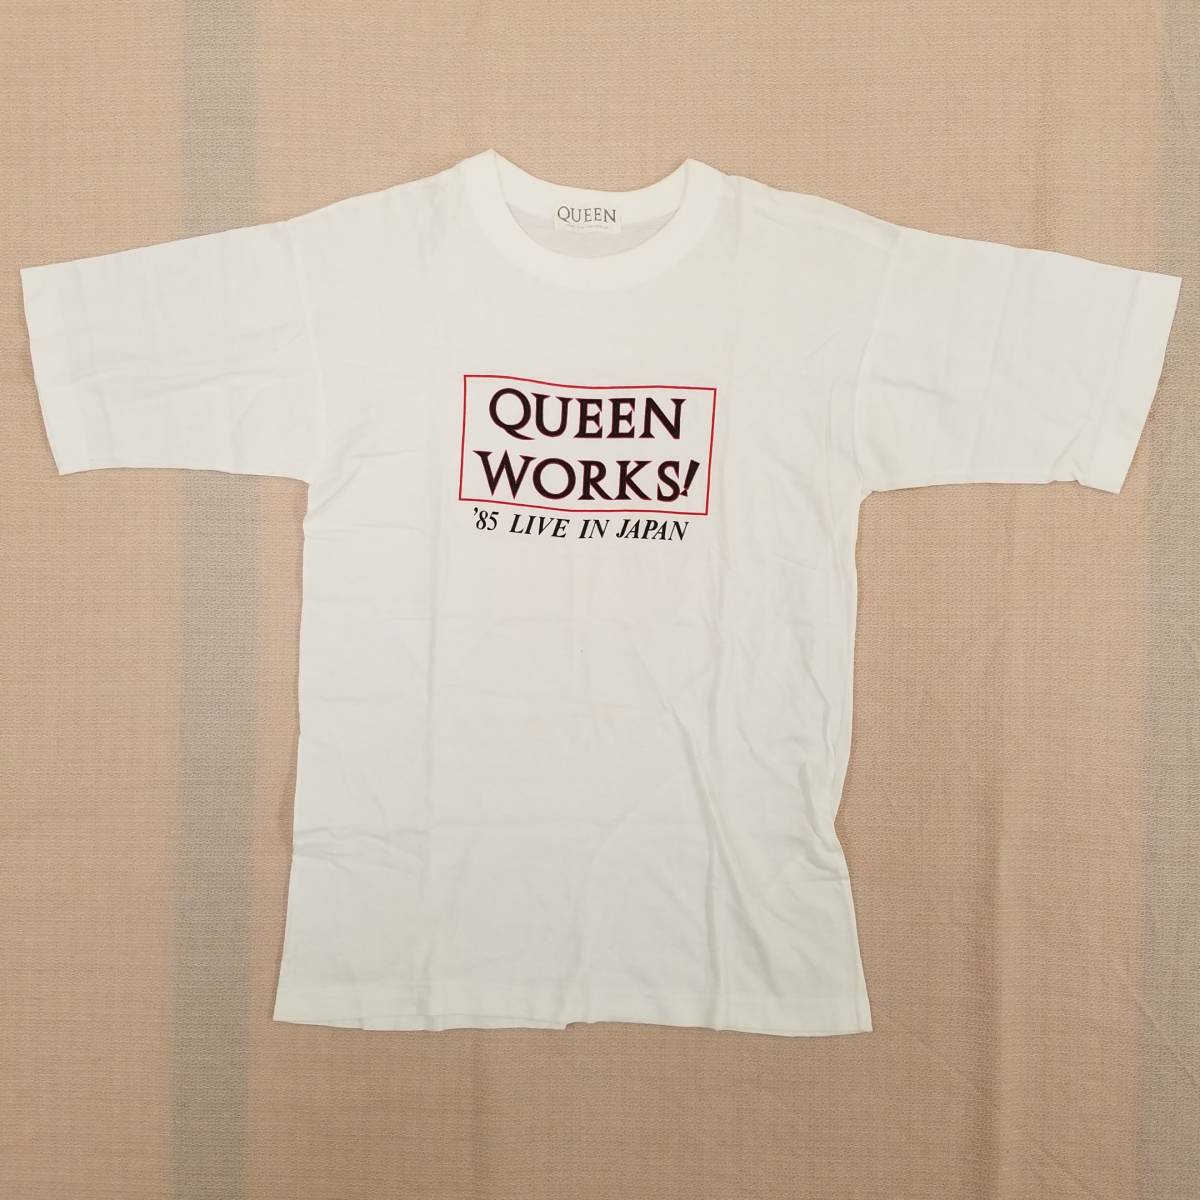 おすすめネット in WORKS! THE / 80sヴィンテージ『QUEEN(クイーン) 魅惑のバンドT特集! JAPAN』ツアーTシャツ サイズ不明 ホワイト 1985年コピーライト Tシャツ